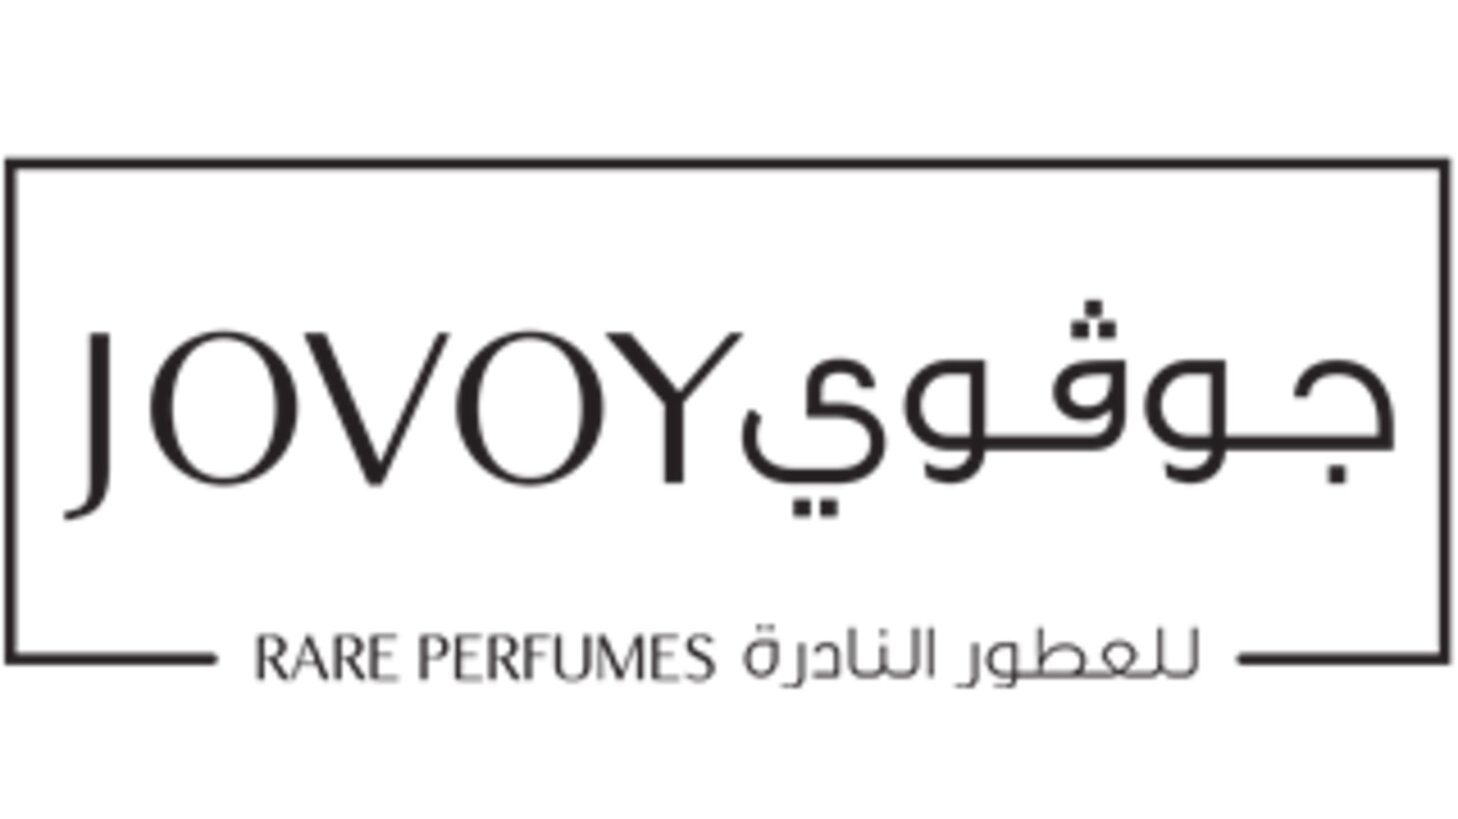 Jovoy Perfumes